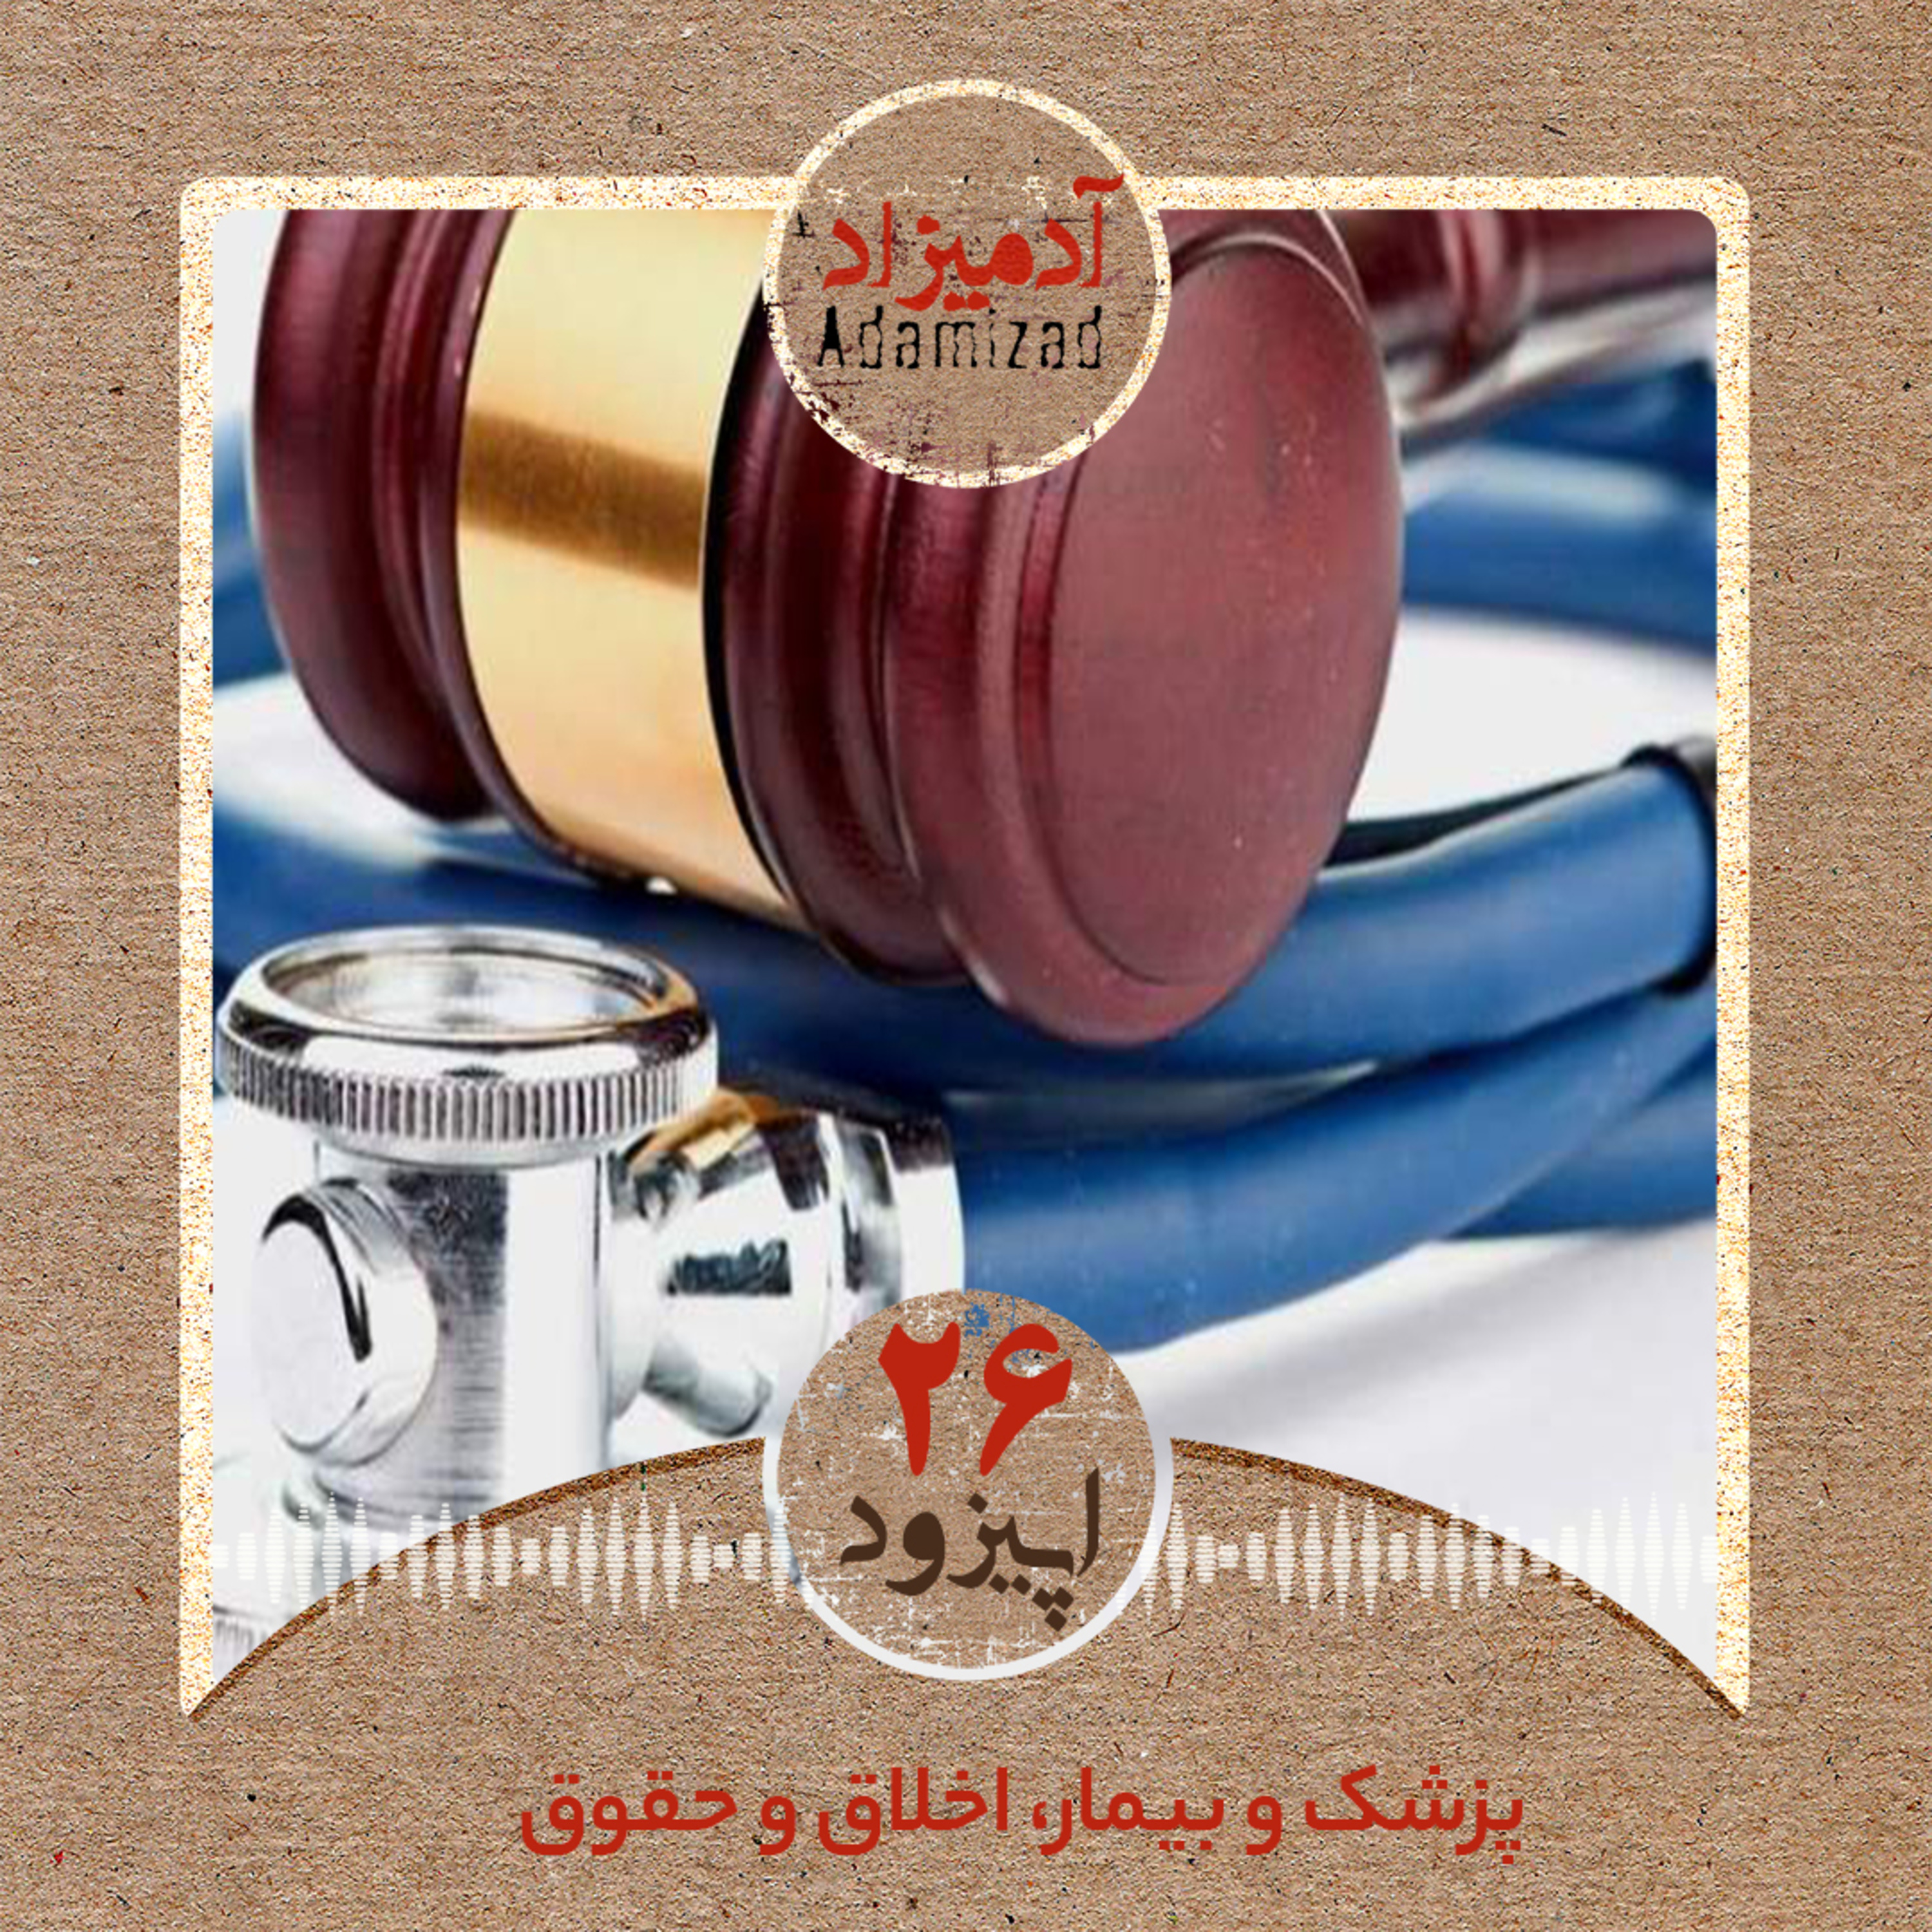 اپیزود26: پزشک و بیمار، اخلاق و حقوق، گفتگویی با دکتر علی صابری